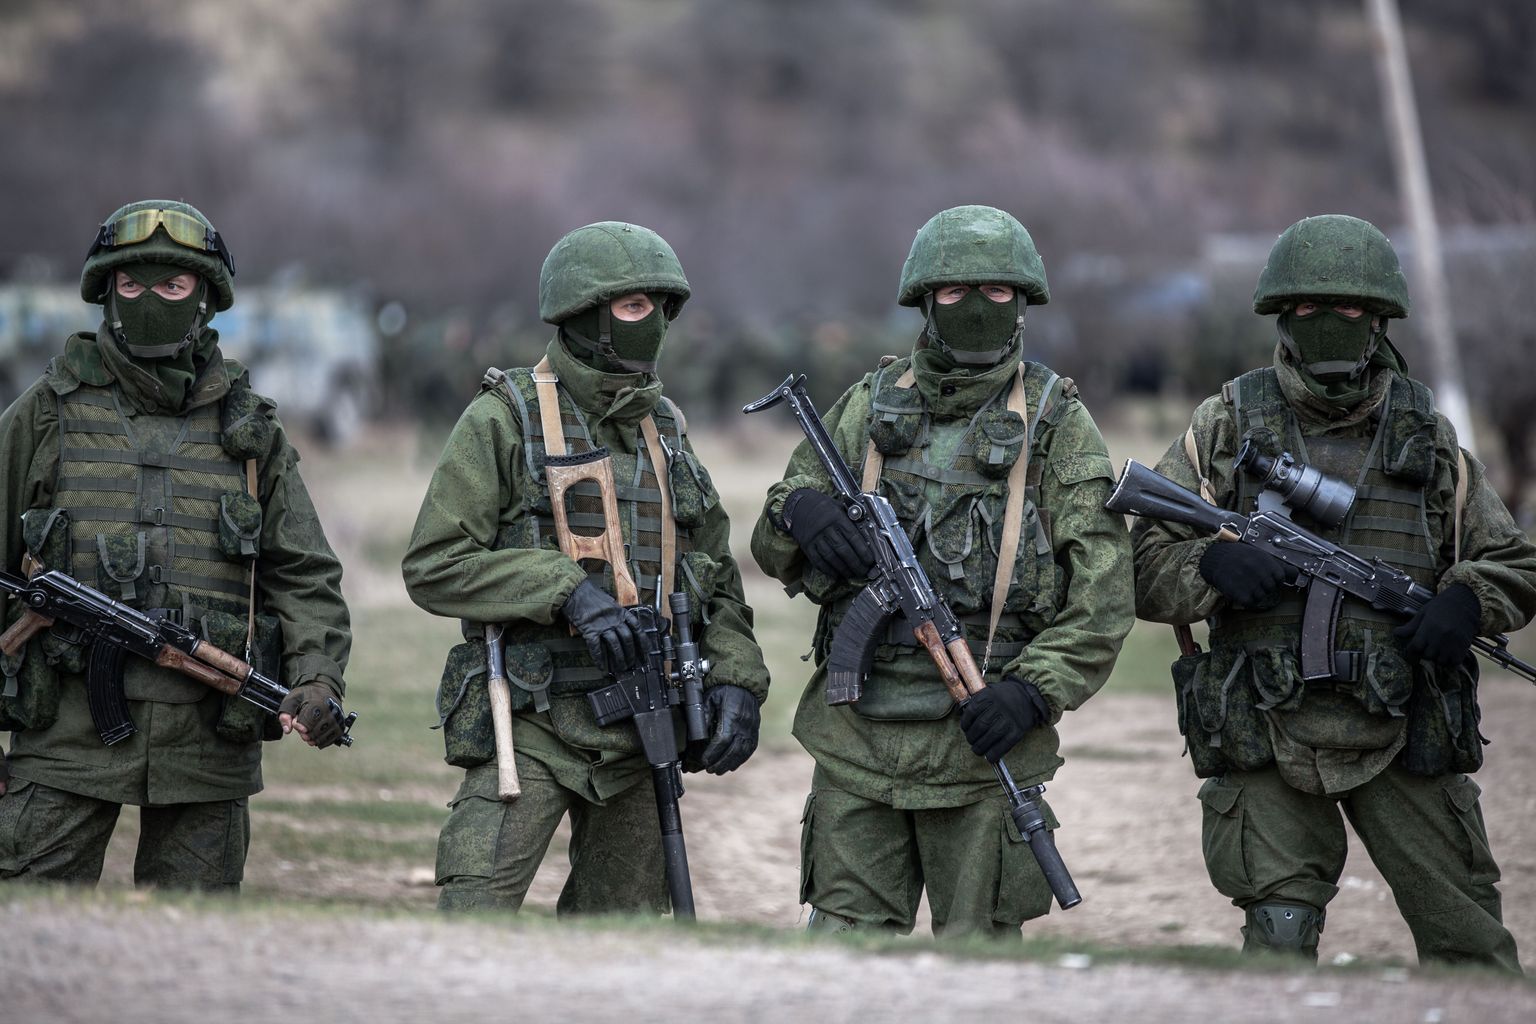 Nn rohelised mehikesed Krimmis 2014. aastal